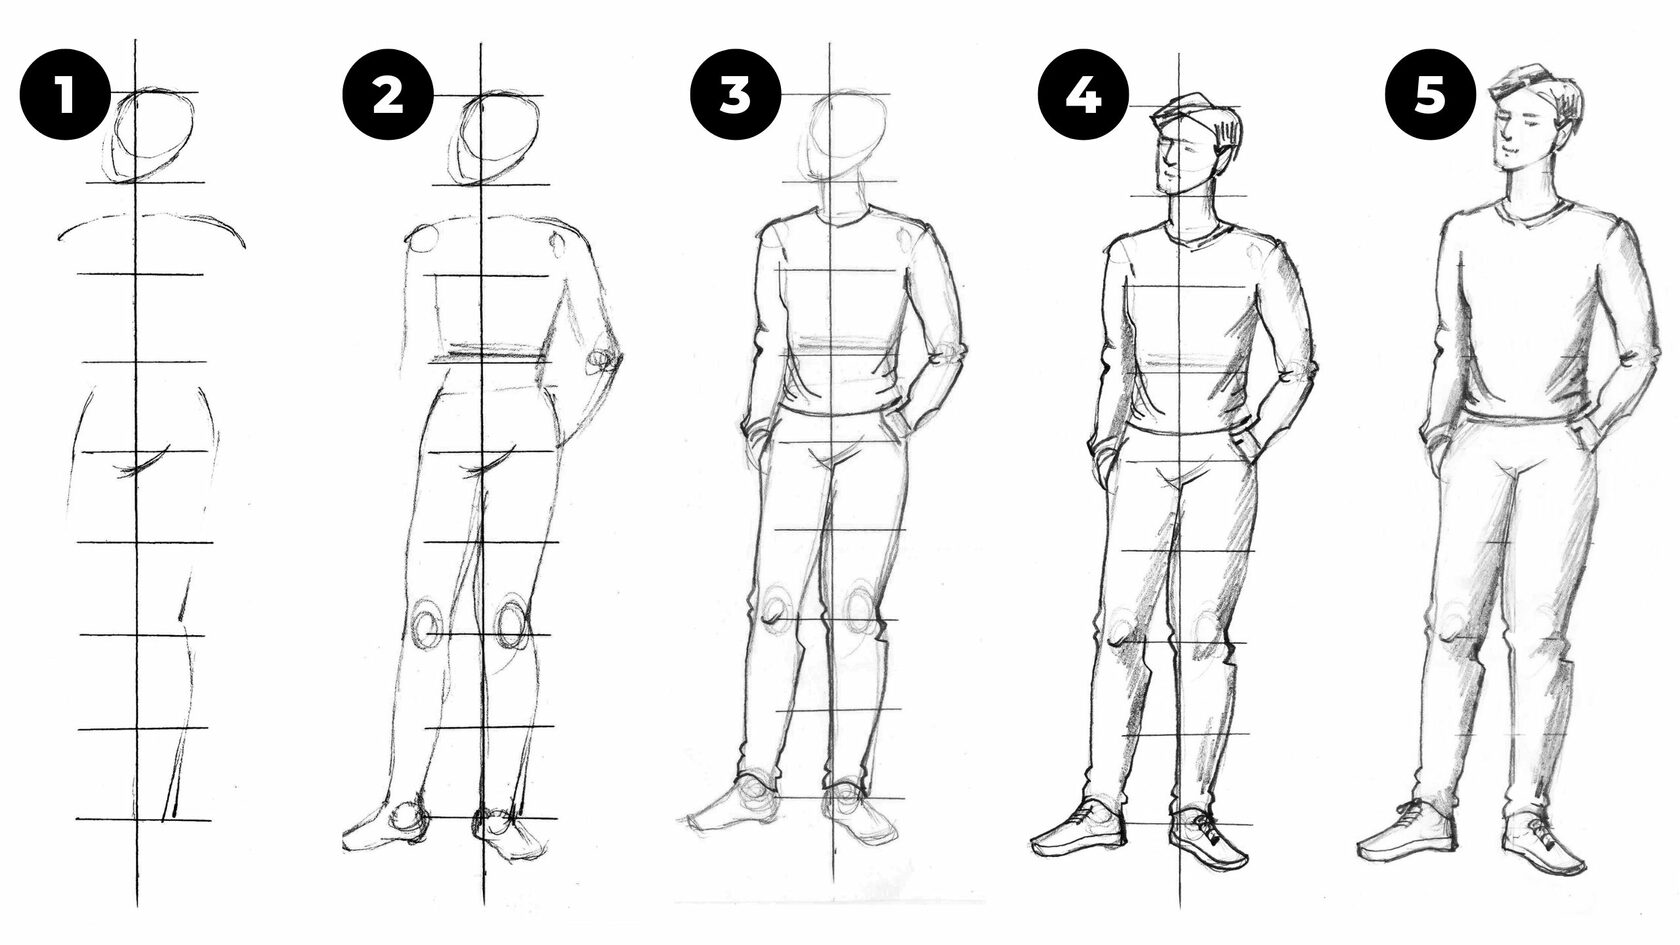 How to Draw the Human Figure | Amazon.com.br-saigonsouth.com.vn